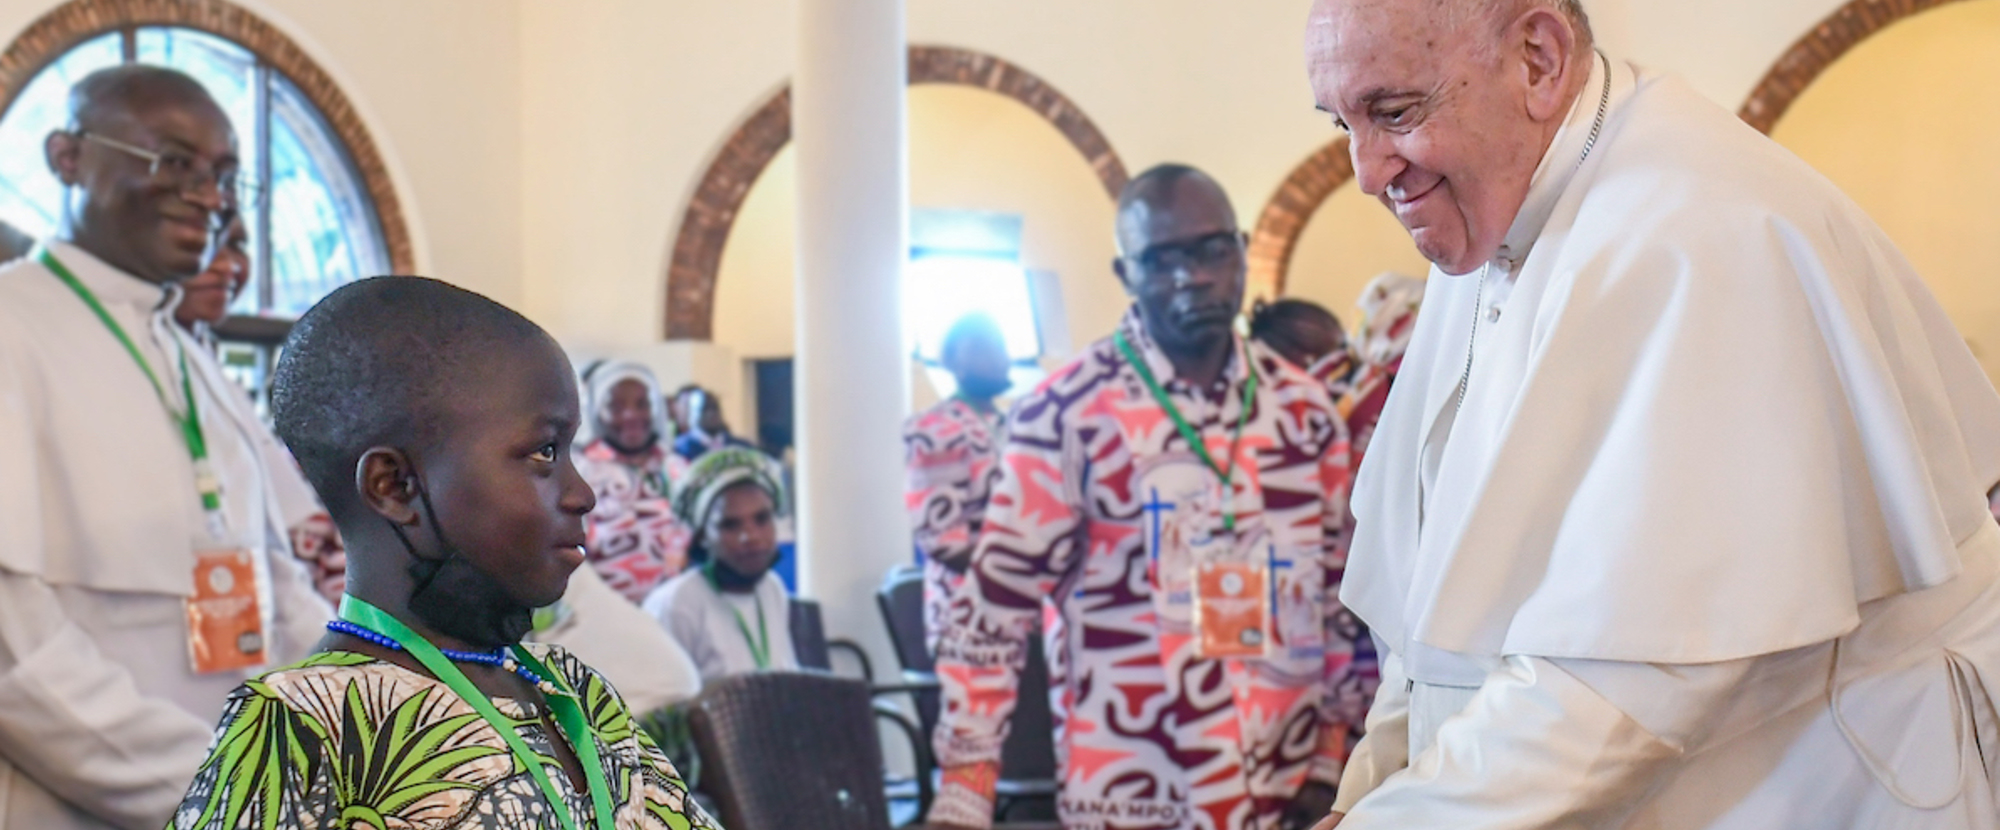 Papst Franziskus reicht einem Kind die Hand bei einem Treffen mit Opfern von Gewalt im Ostkongo am 1. Februar 2023 in der Apostolischen Nuntiatur in Kinshasa (Demokratische Republik Kongo).